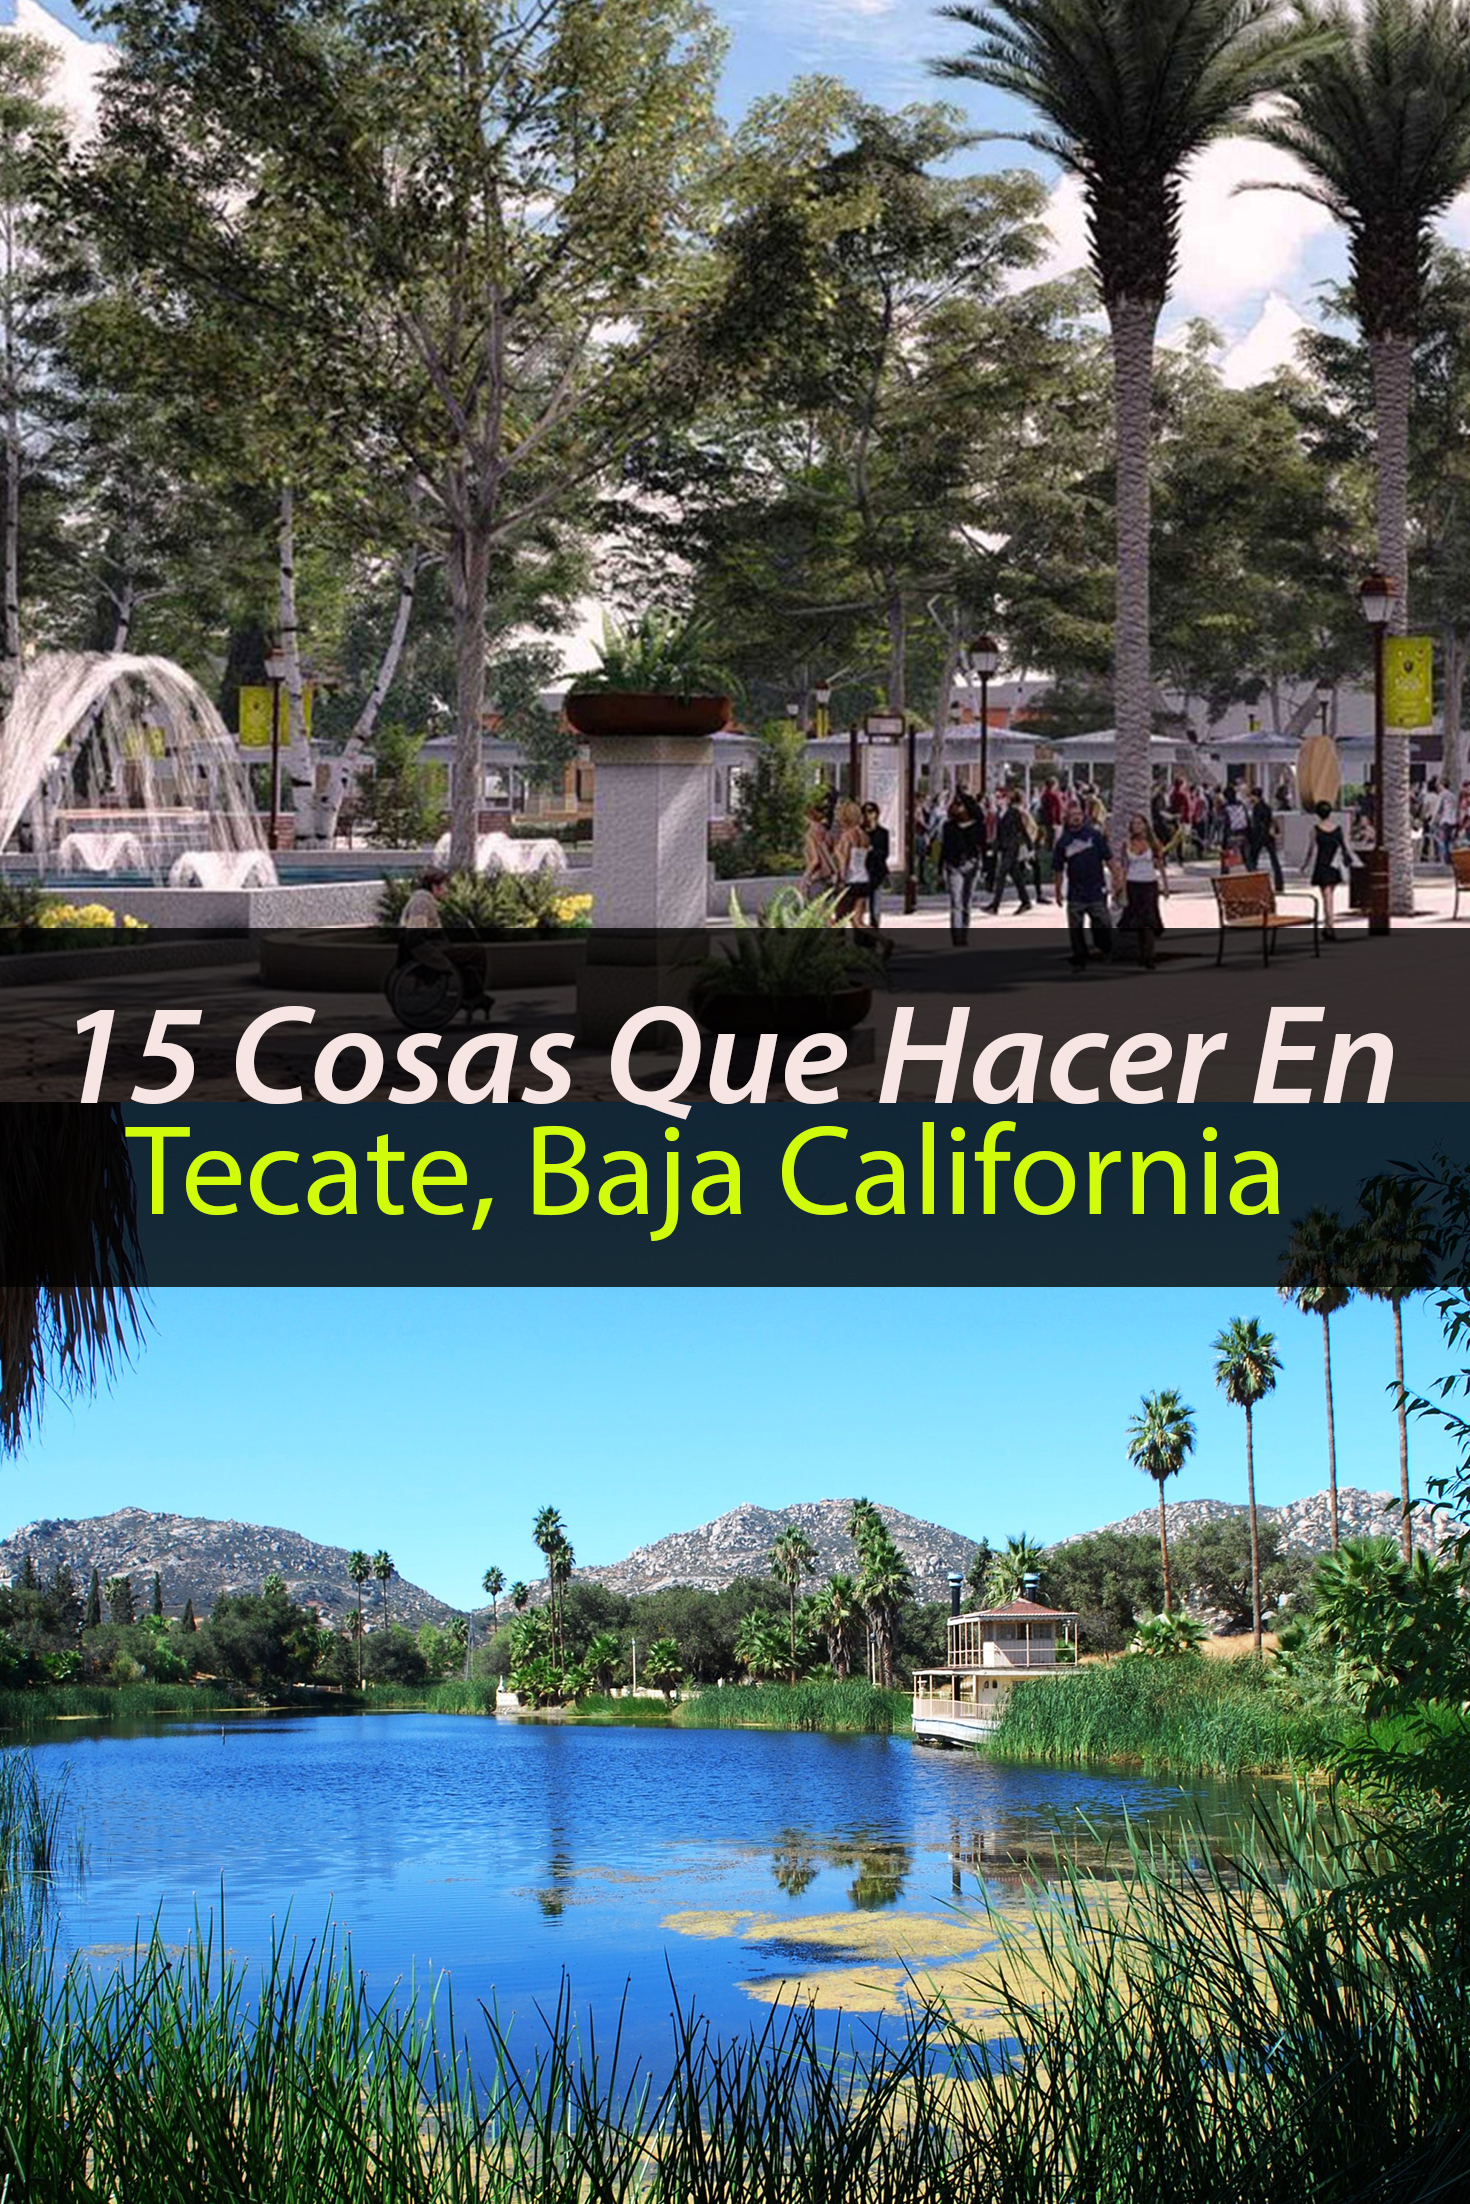 15 cosas que hacer y ver en Tecate, Baja California